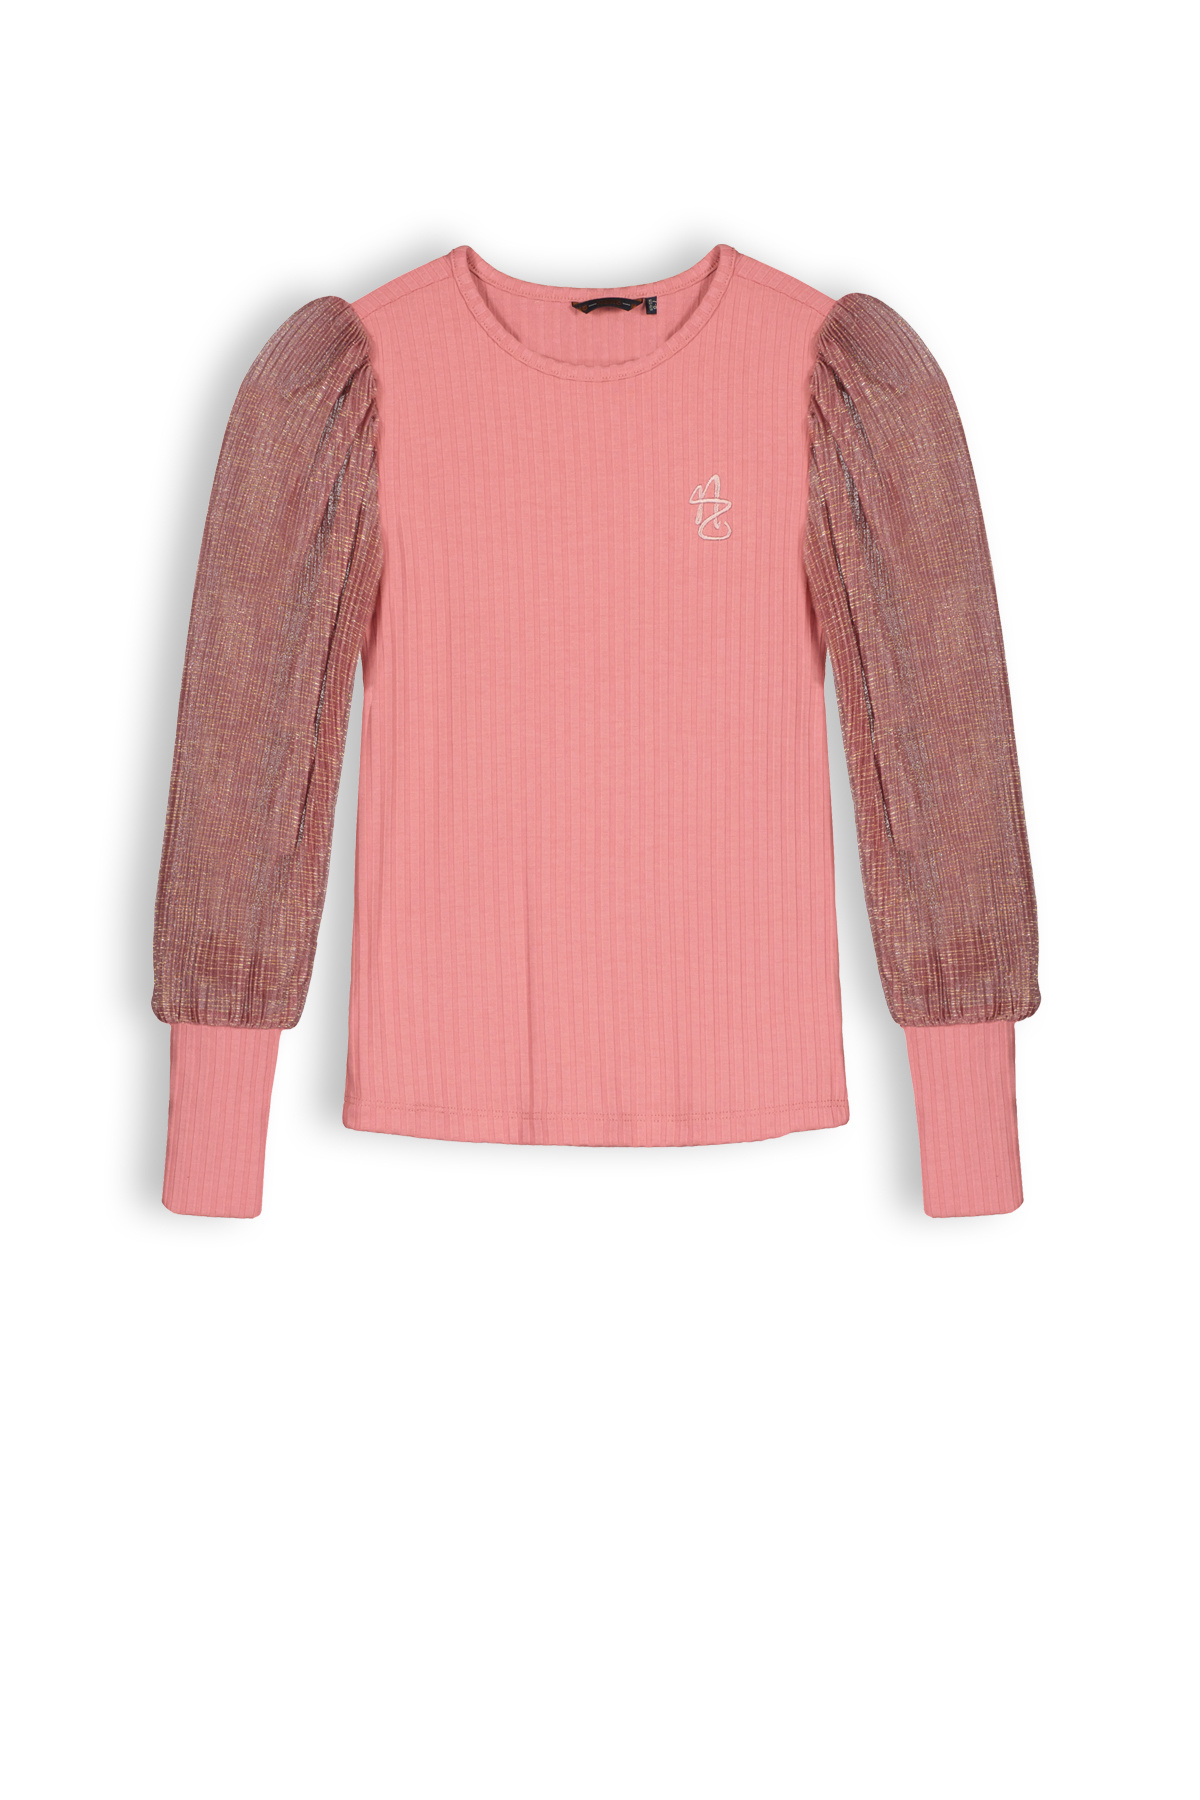 Meisjes shirt jersey rib - Sunset roze